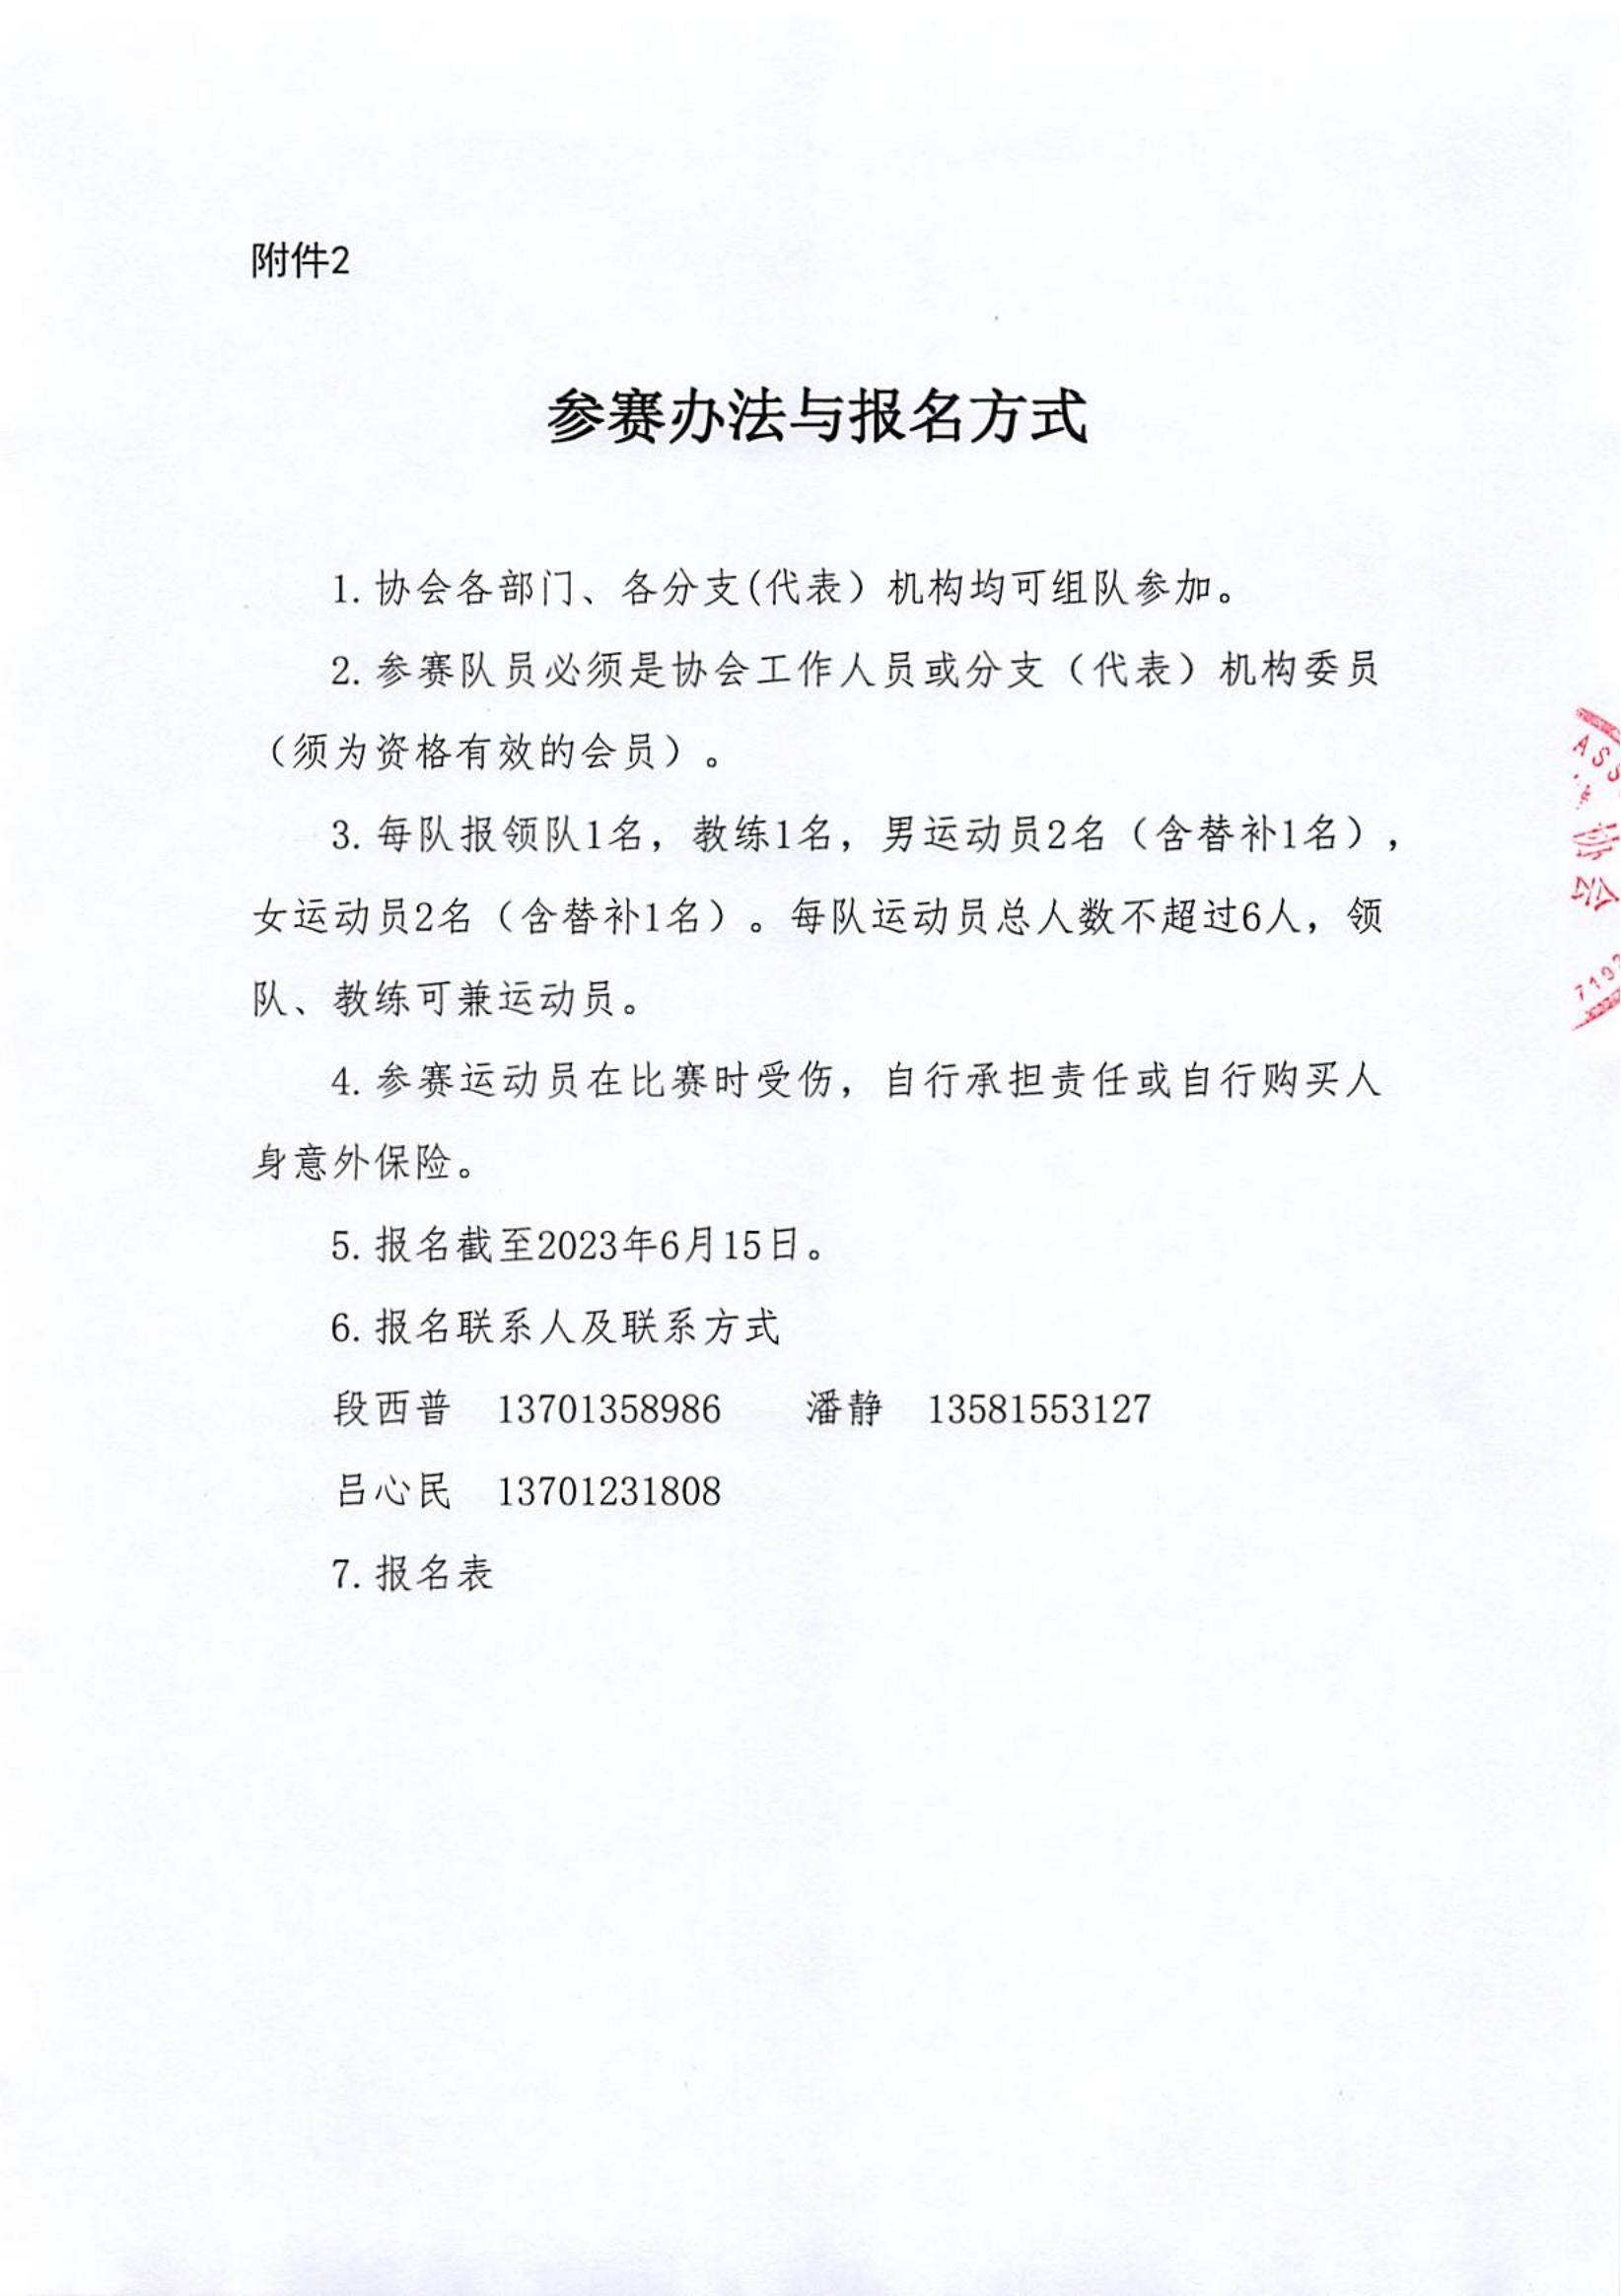 关于组织中国老年保健协会羽毛球比赛活动的通知_03.jpg